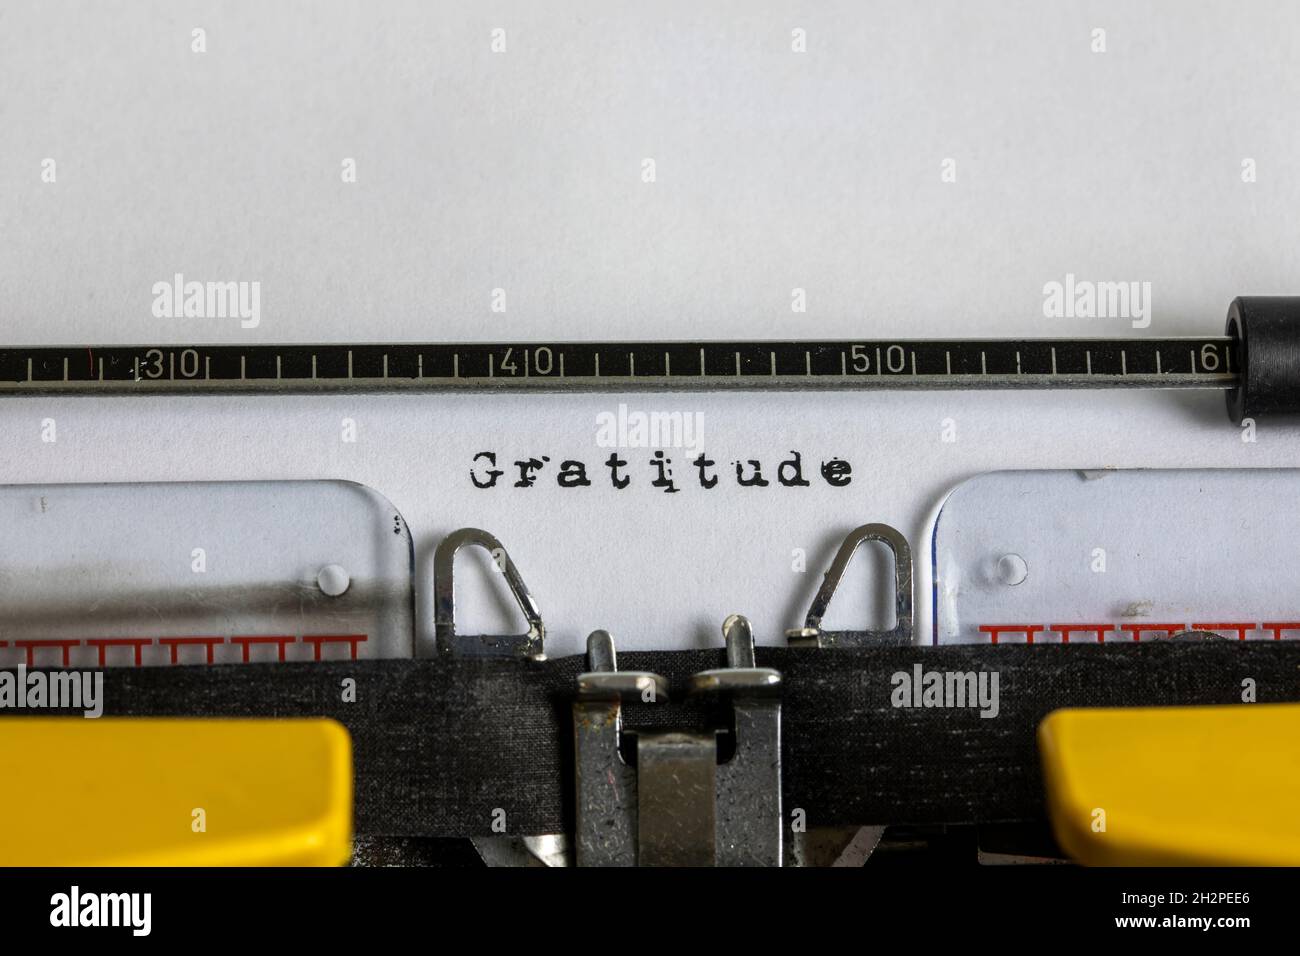 Gratitude written on an old typewriter Stock Photo